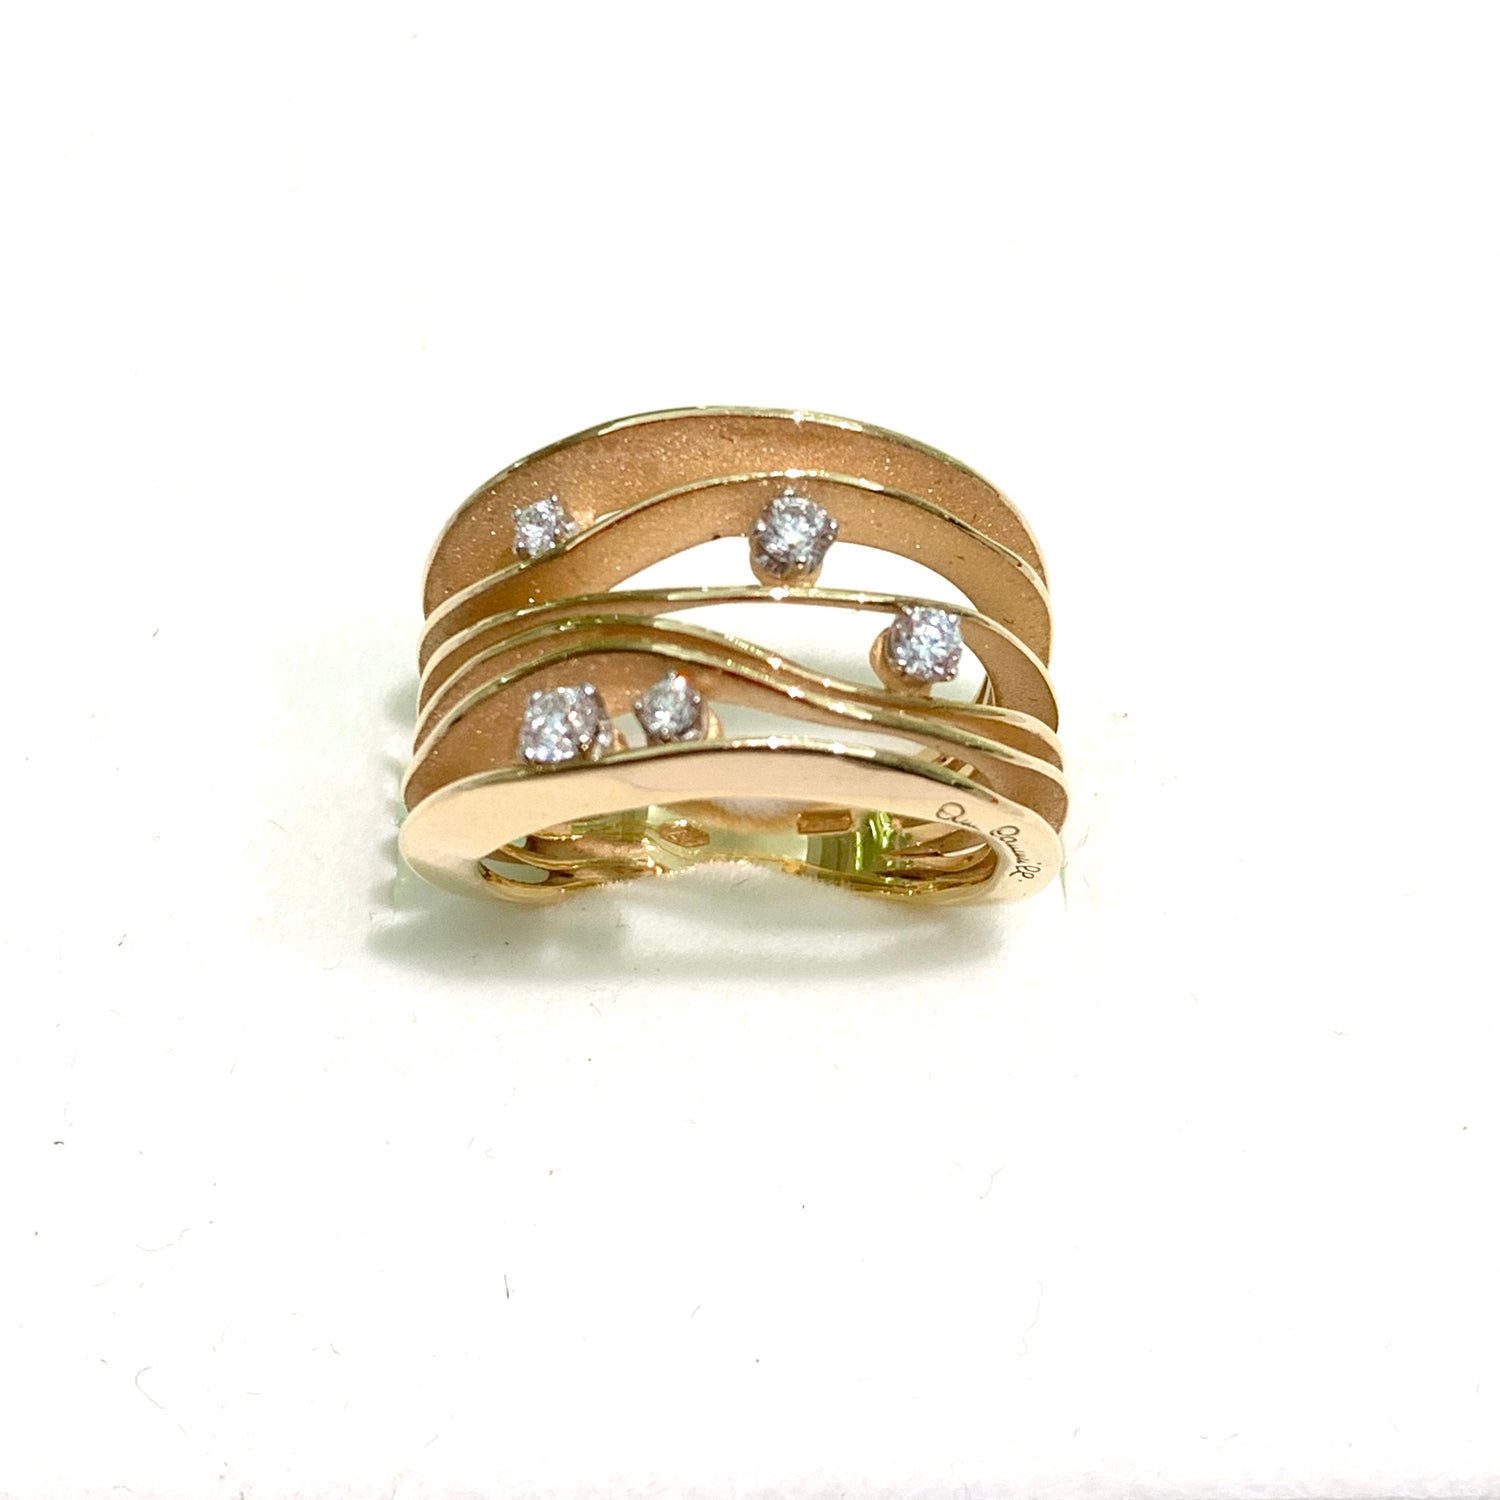 Anello in oro giallo 18kt a fascia larga con sei lamelle sottili impreziosite da cinque diamanti.  Diamanti 0,28 carati.  Larghezza fascia 1,2 cm.  Misura 16.